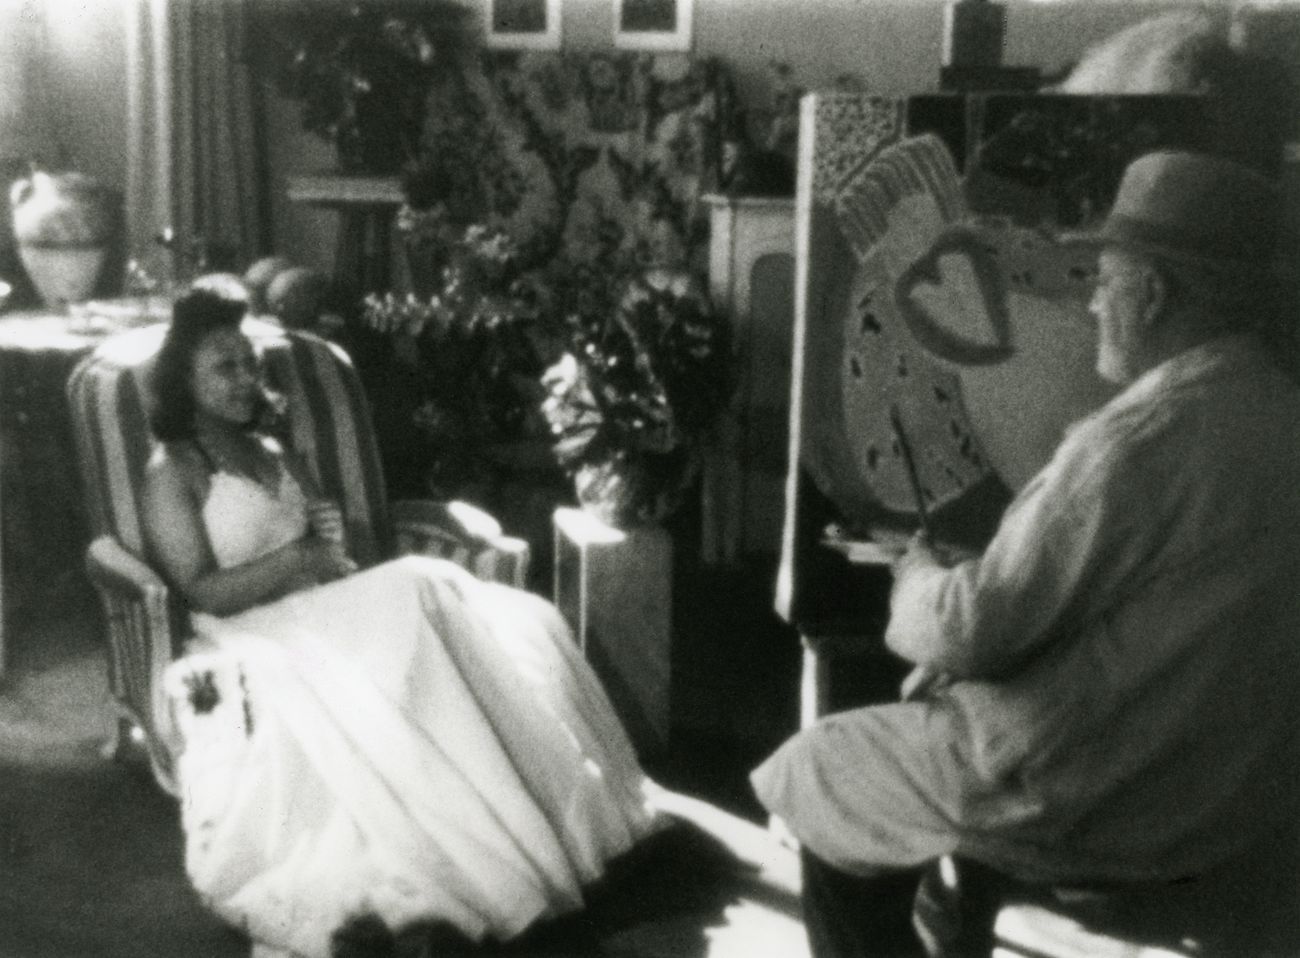 François Campaux, Henri Matisse, 1946, film still. Courtey M. Cavaglione Valio. Photogramma Ville de Nice